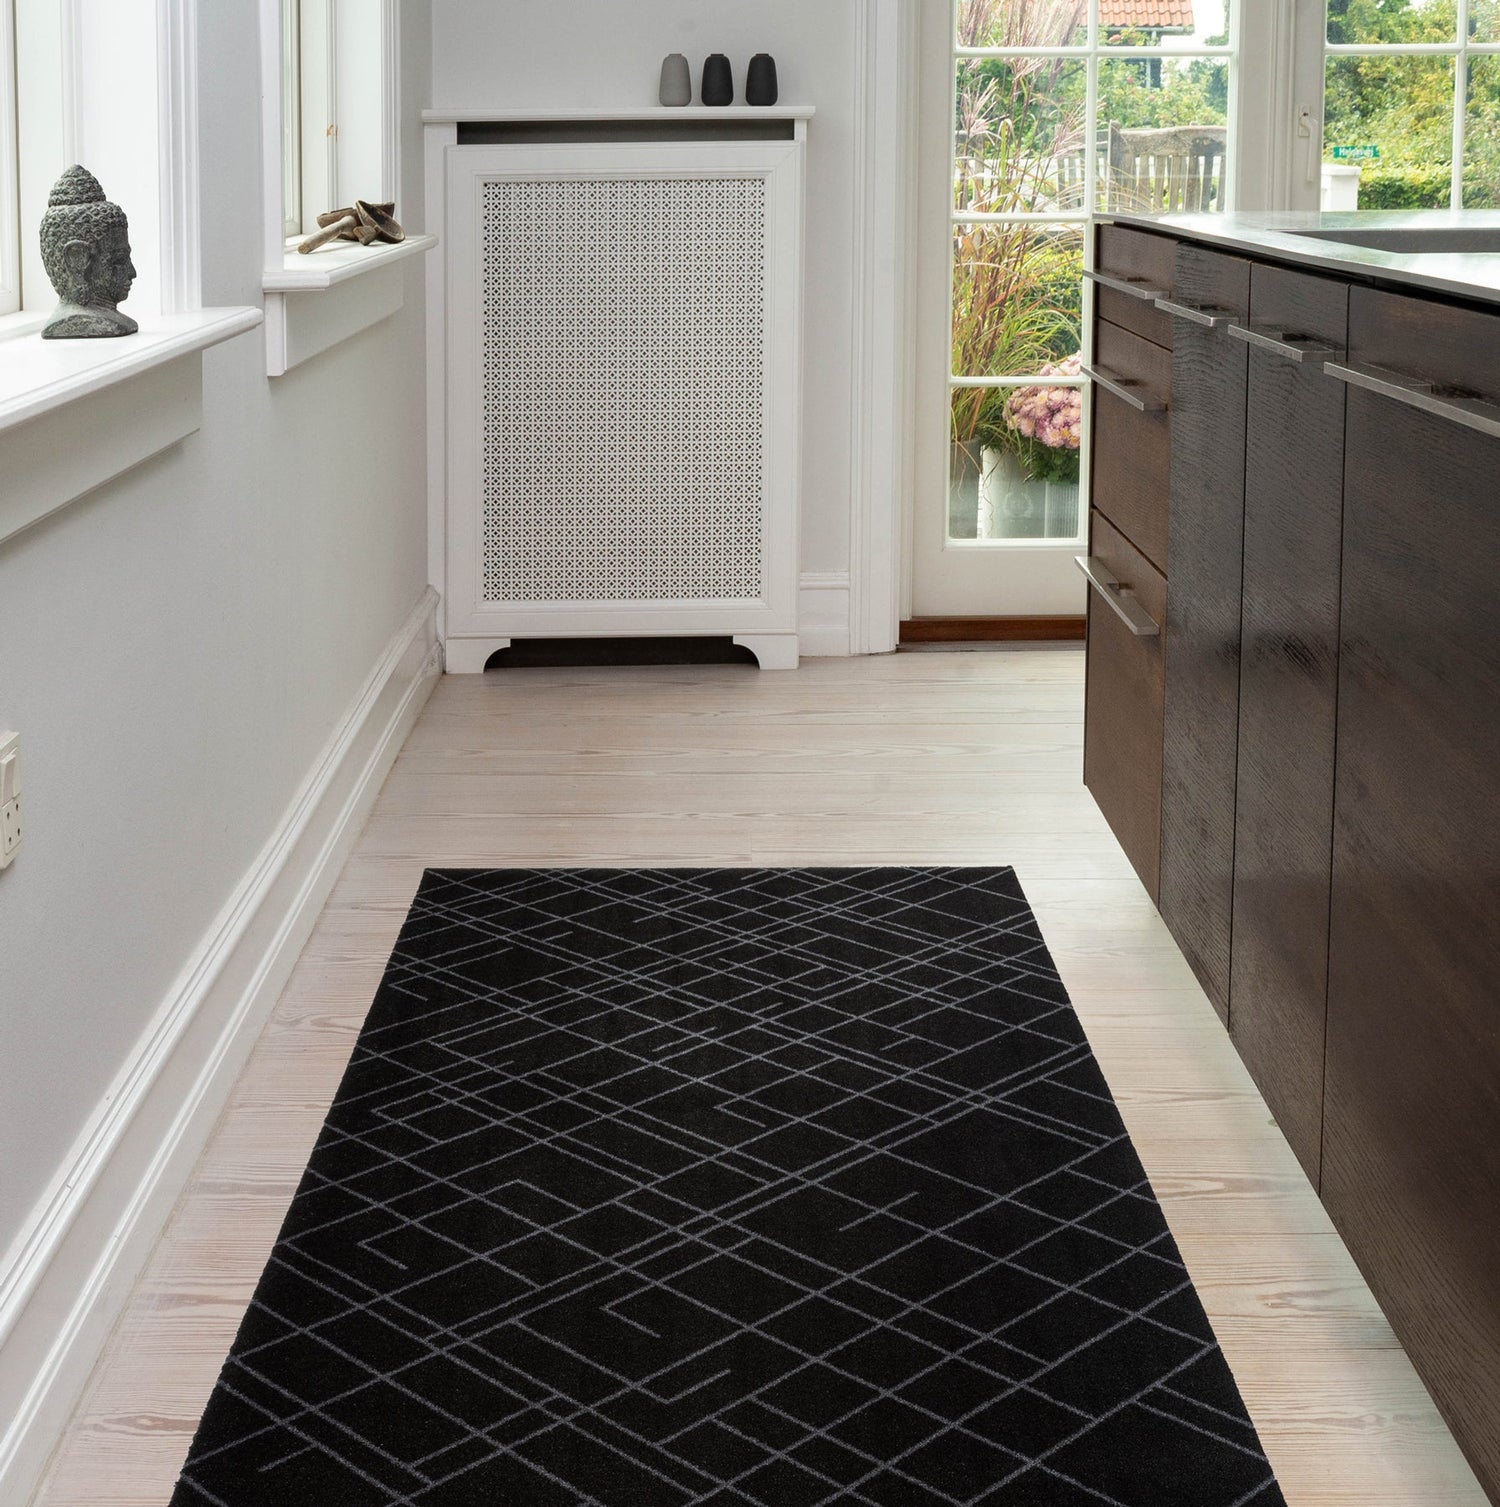 Floor mat 90 x 130 cm - Lines/Black Gray